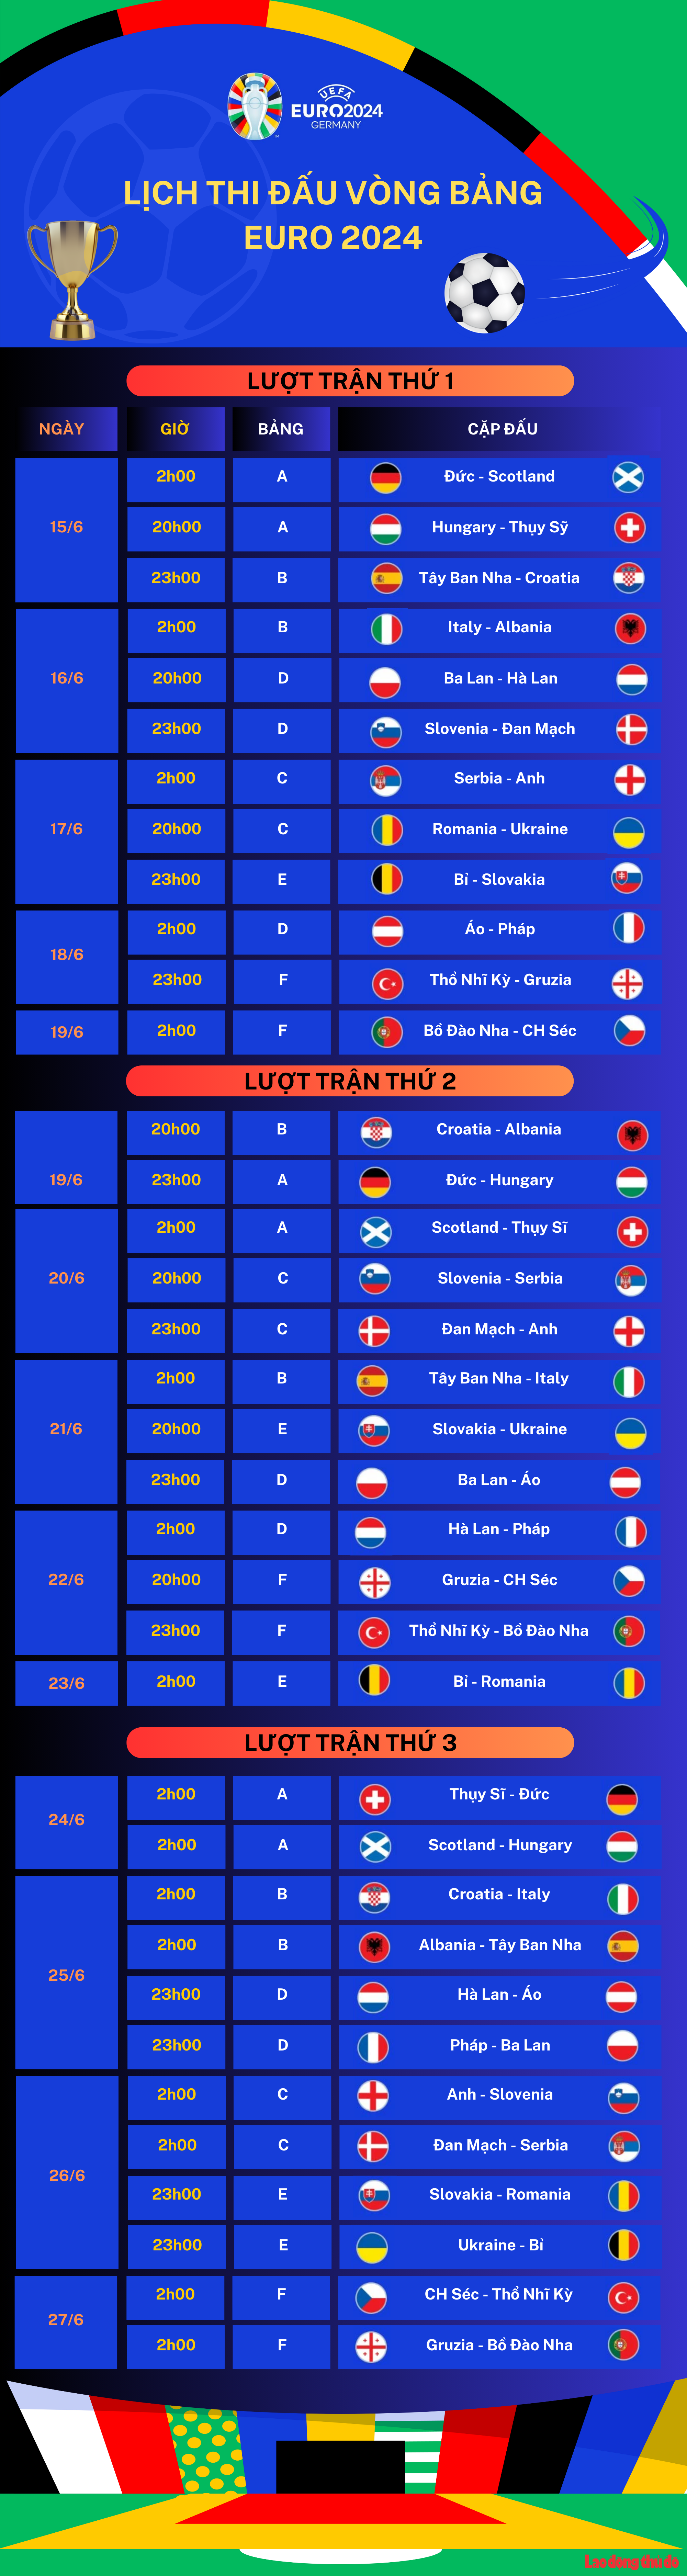 Lịch thi đấu vòng chung kết EURO 2024